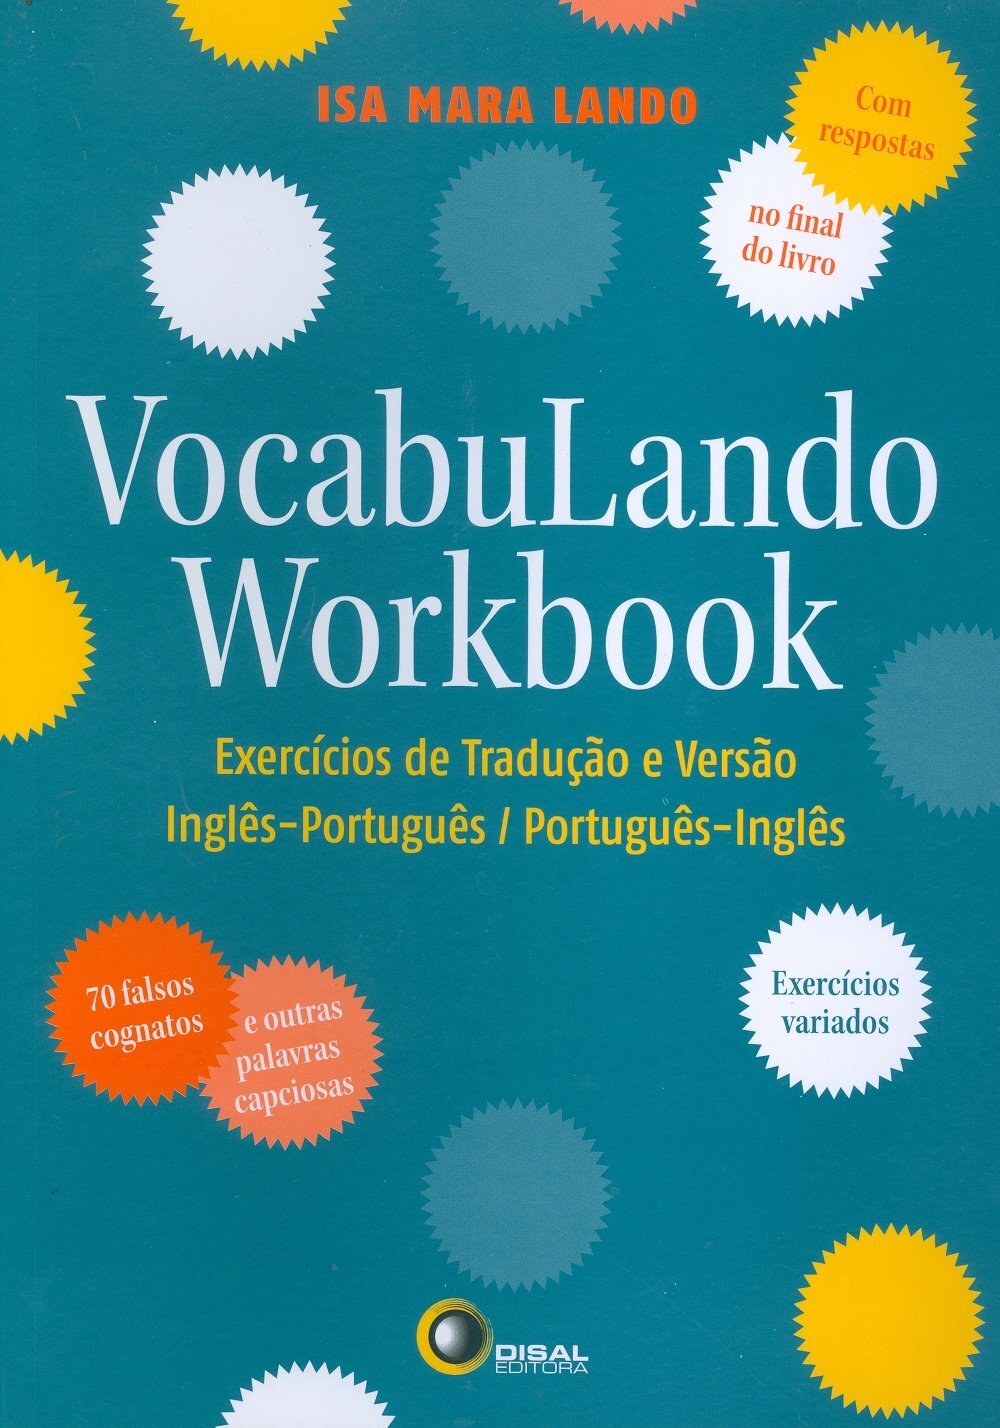 vocabulando workbook.jpg